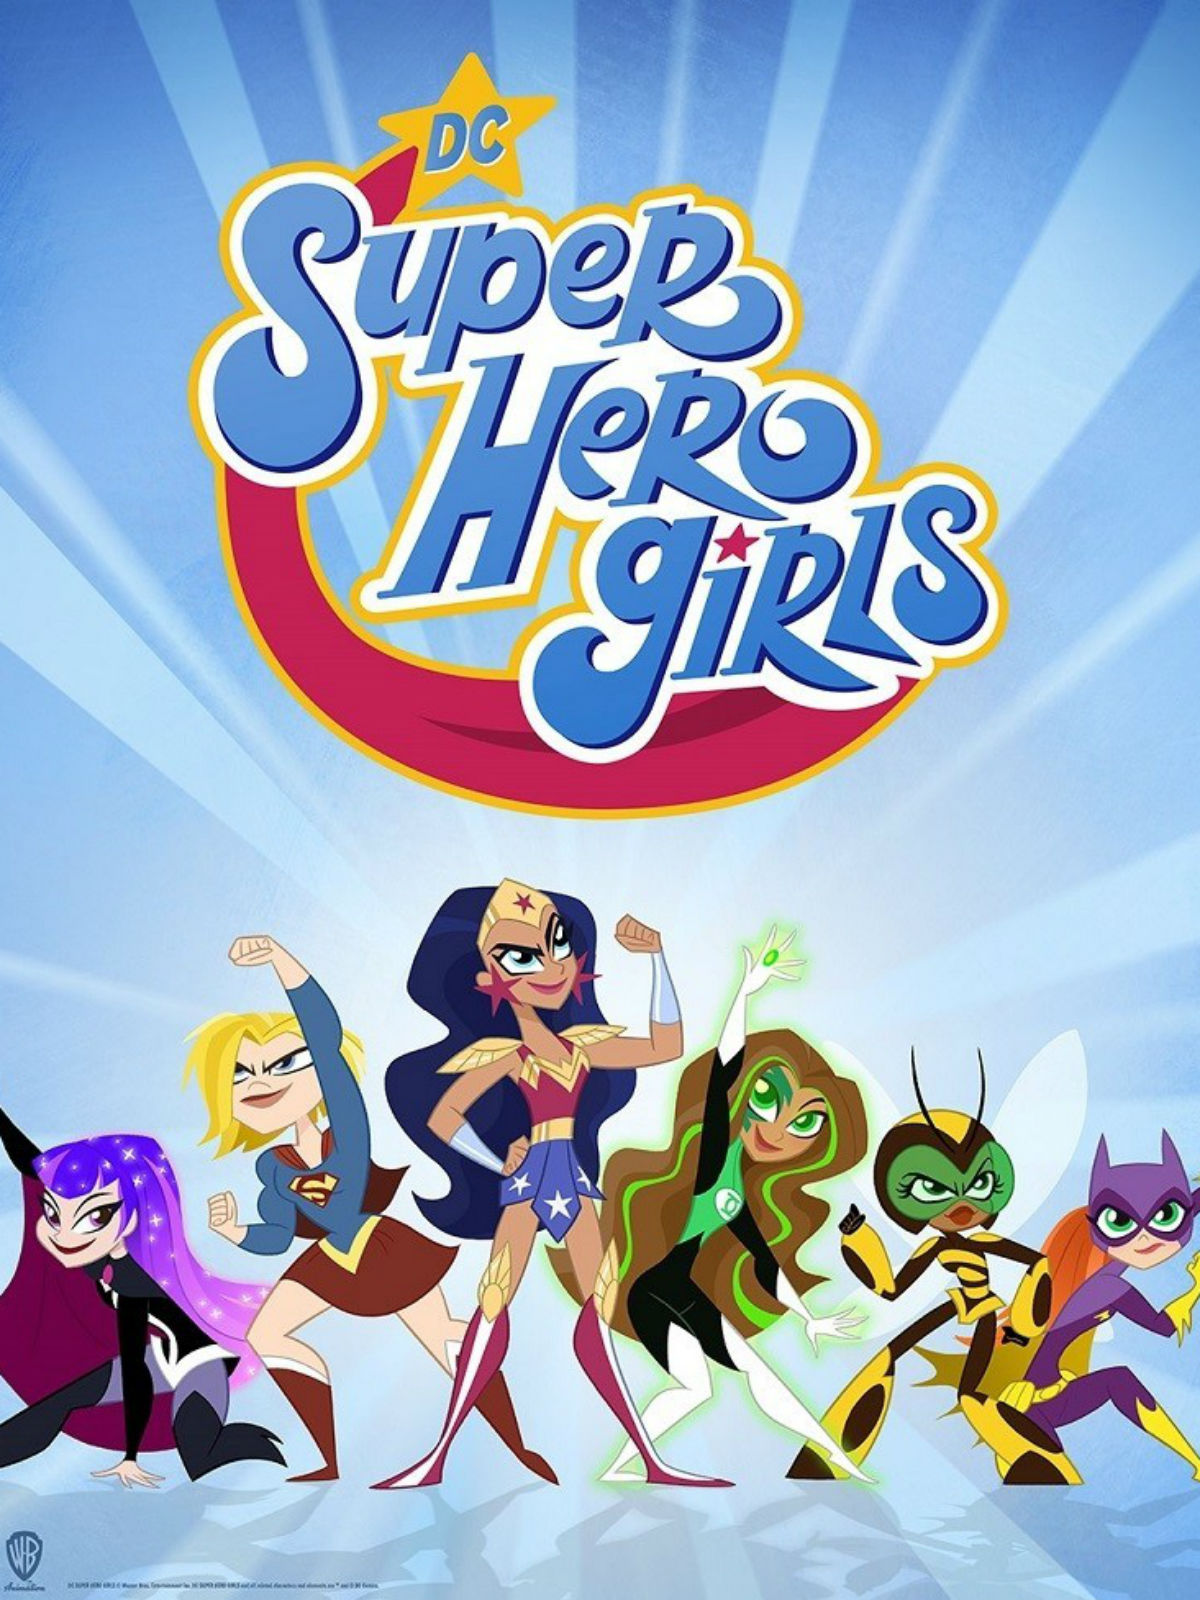 DC Super Hero Girls (2018) - Serie 2019 - SensaCine.com